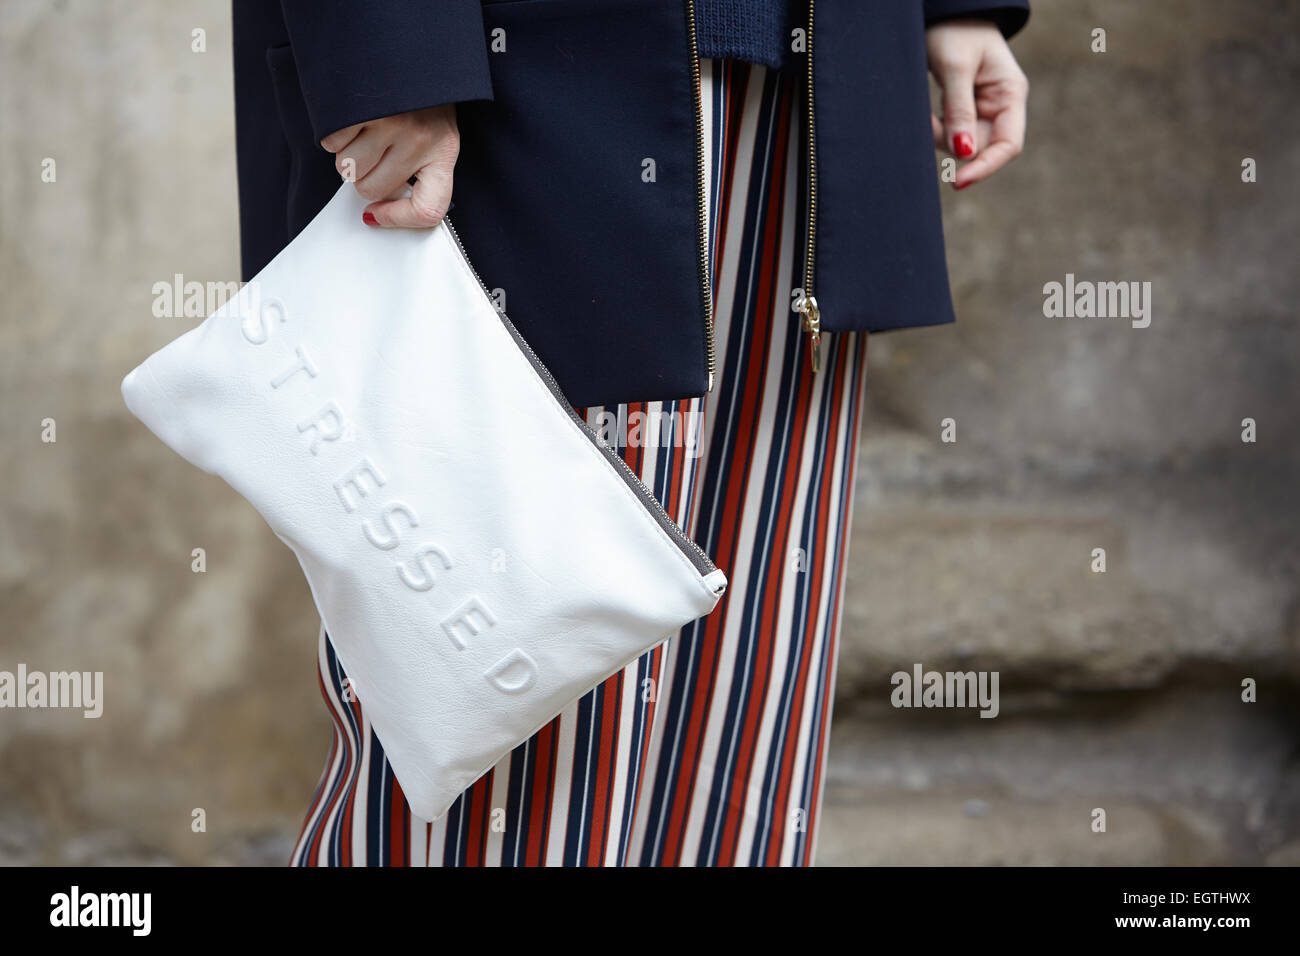 Zara fashion bag immagini e fotografie stock ad alta risoluzione - Alamy